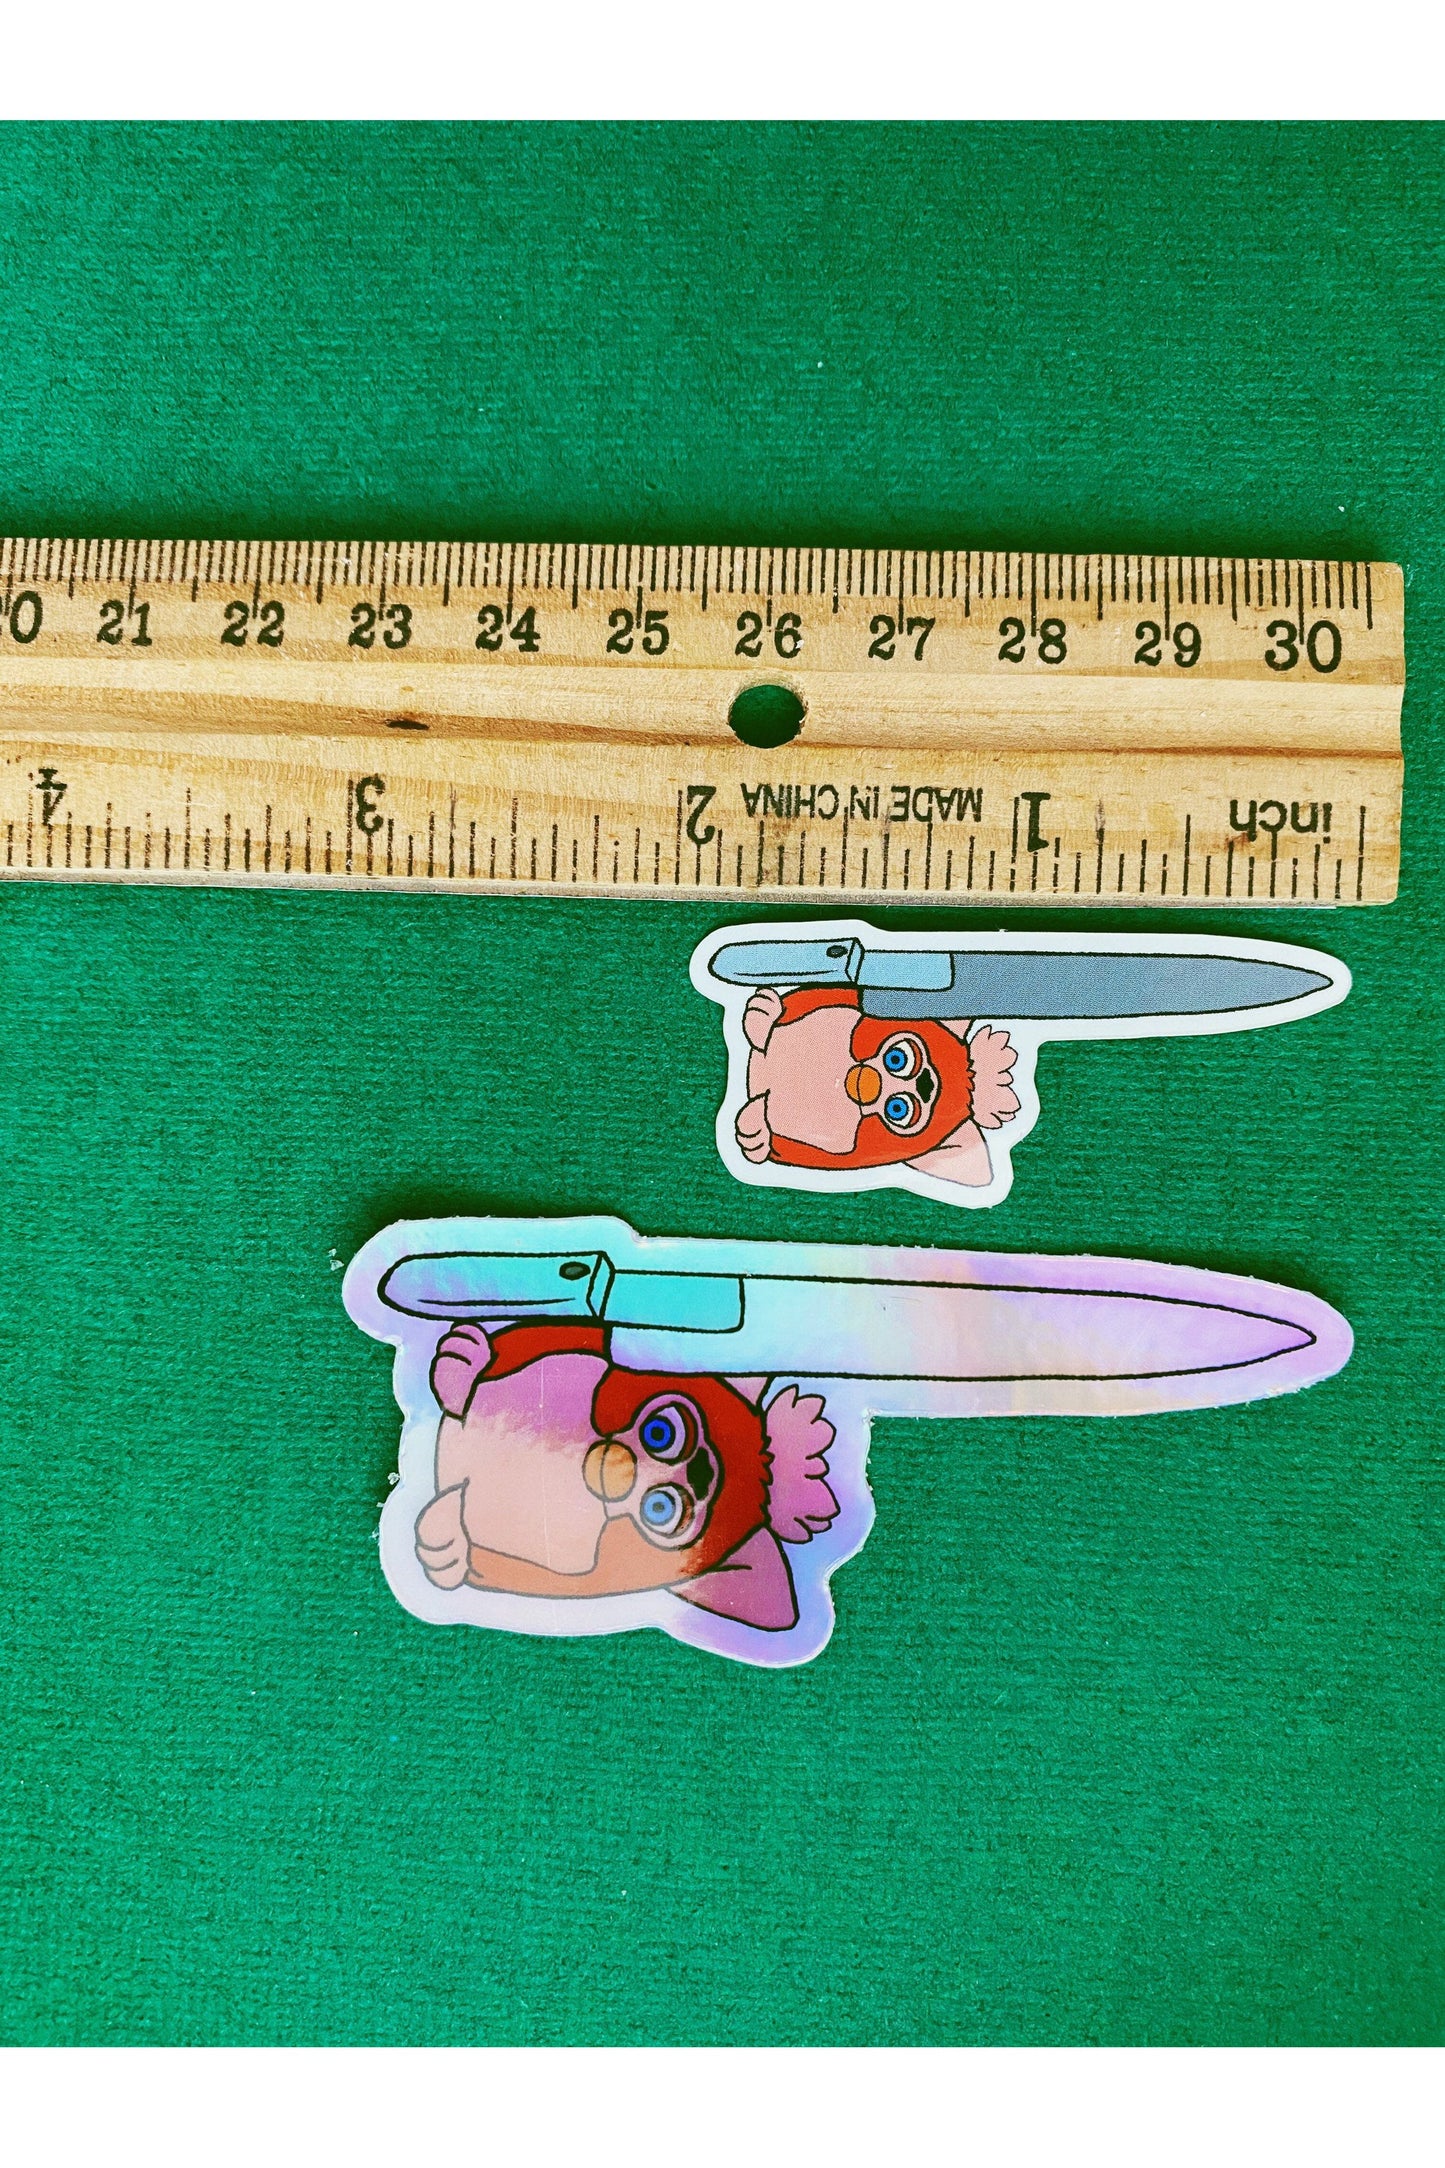 Cursed Furbies - Knife Baby Furby Art Mini Sticker.